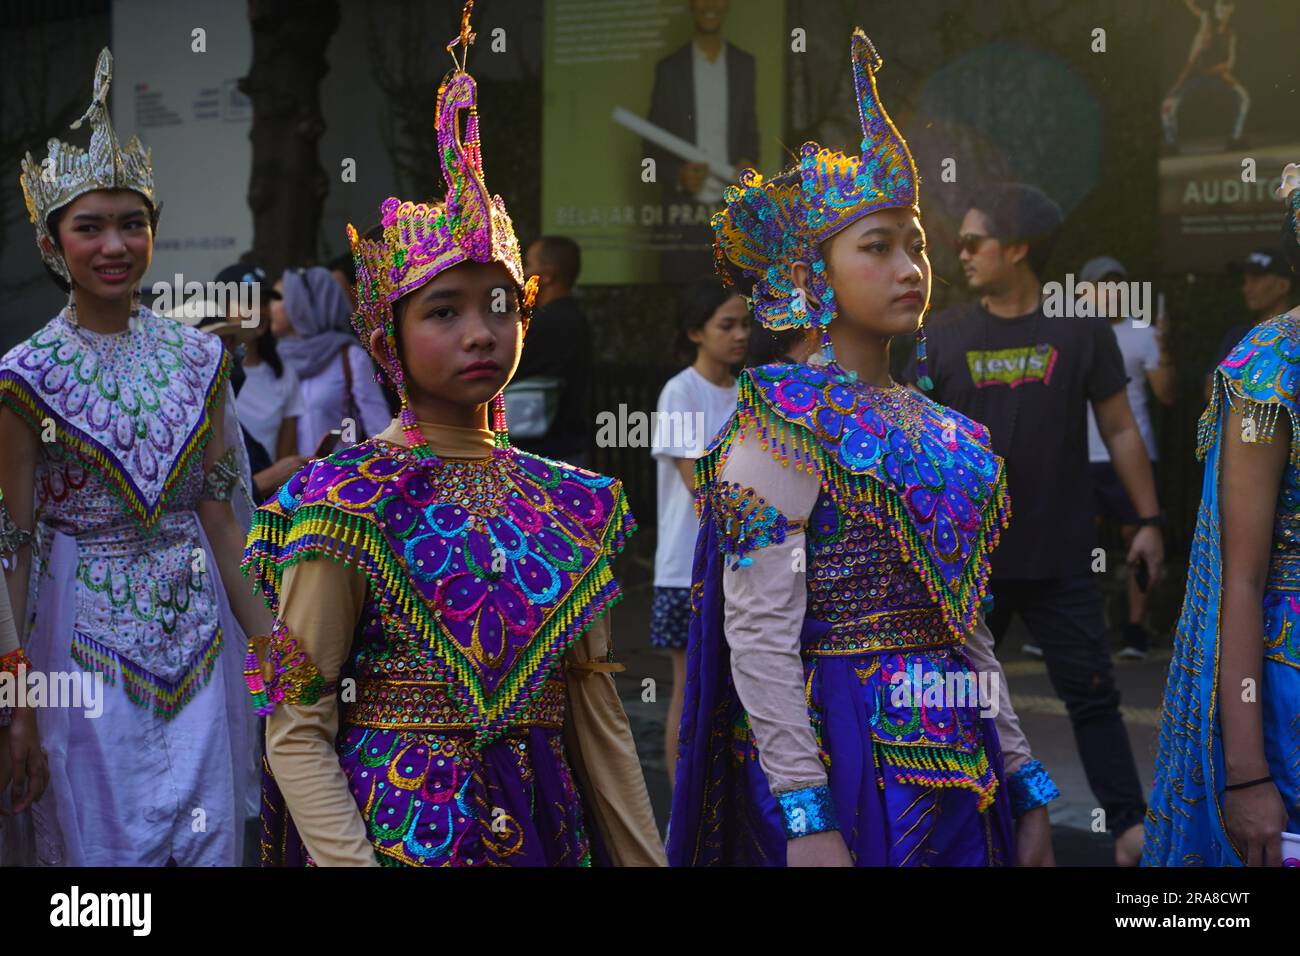 11. Juni 2023 Paprika in traditioneller indonesischer Kleidung auf dem Art Carnival während des autofreien Tages in Jakarta. Straßenfotografie. Stockfoto